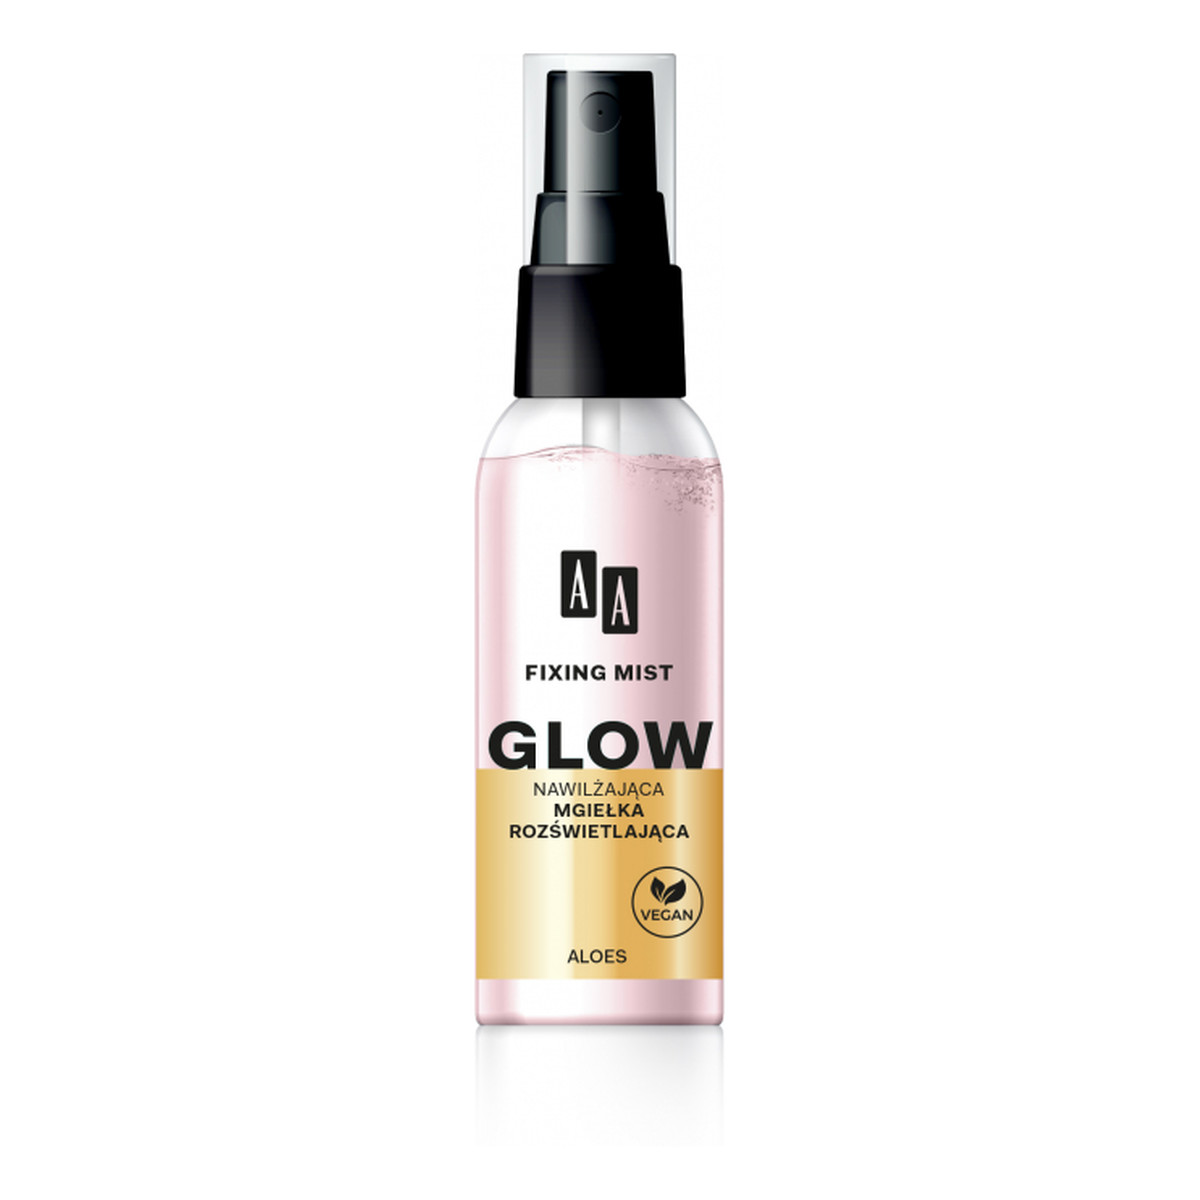 AA Glow mgiełka rozświetlająca utrwalająca makijaż 50ml